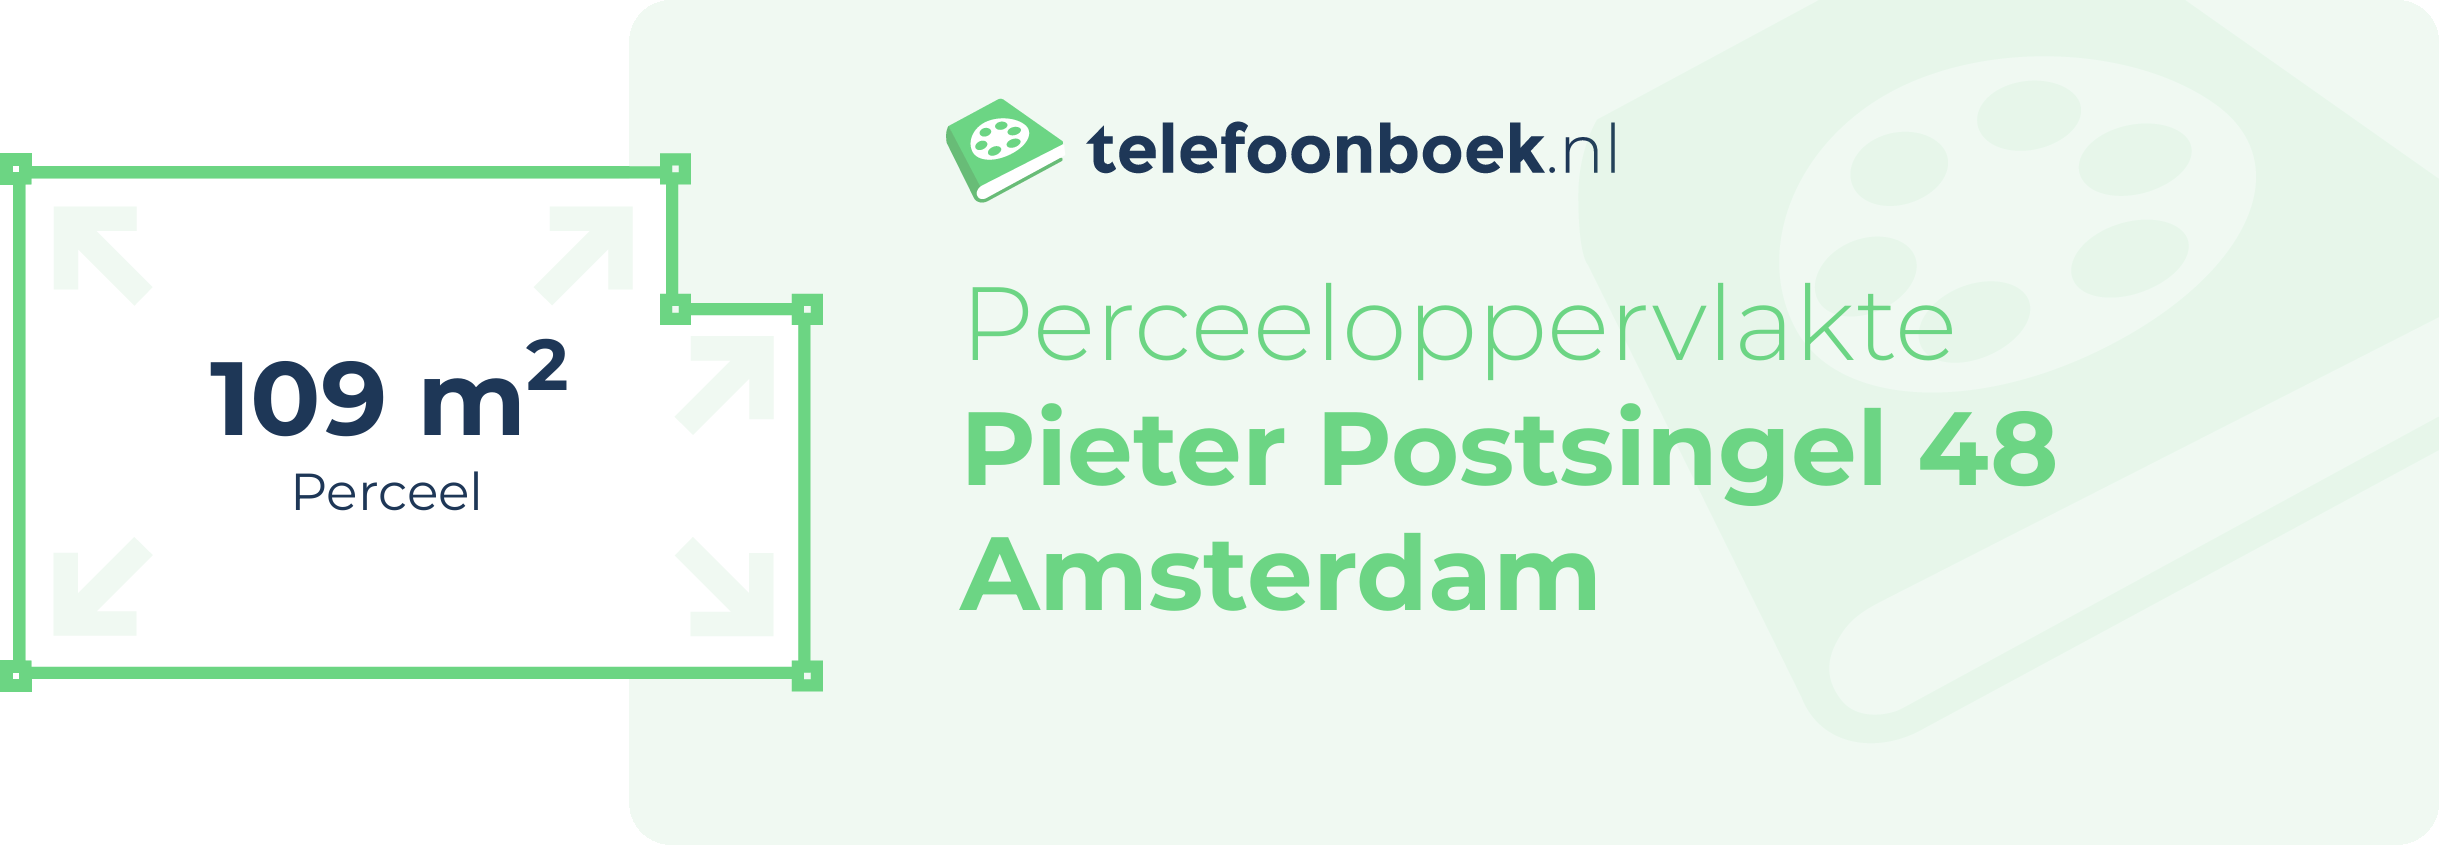 Perceeloppervlakte Pieter Postsingel 48 Amsterdam